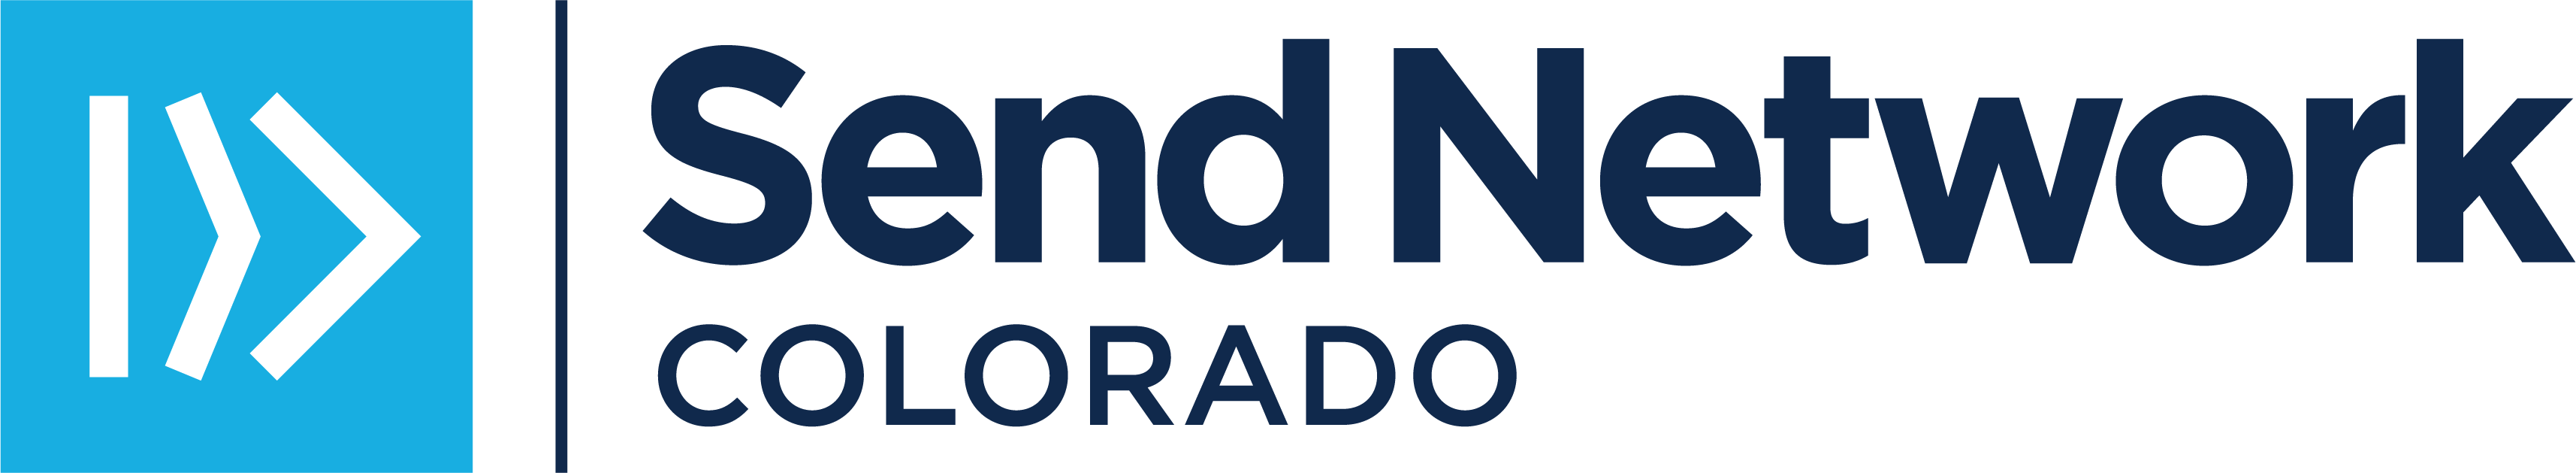 SN Colorado Logo_BlueNavy